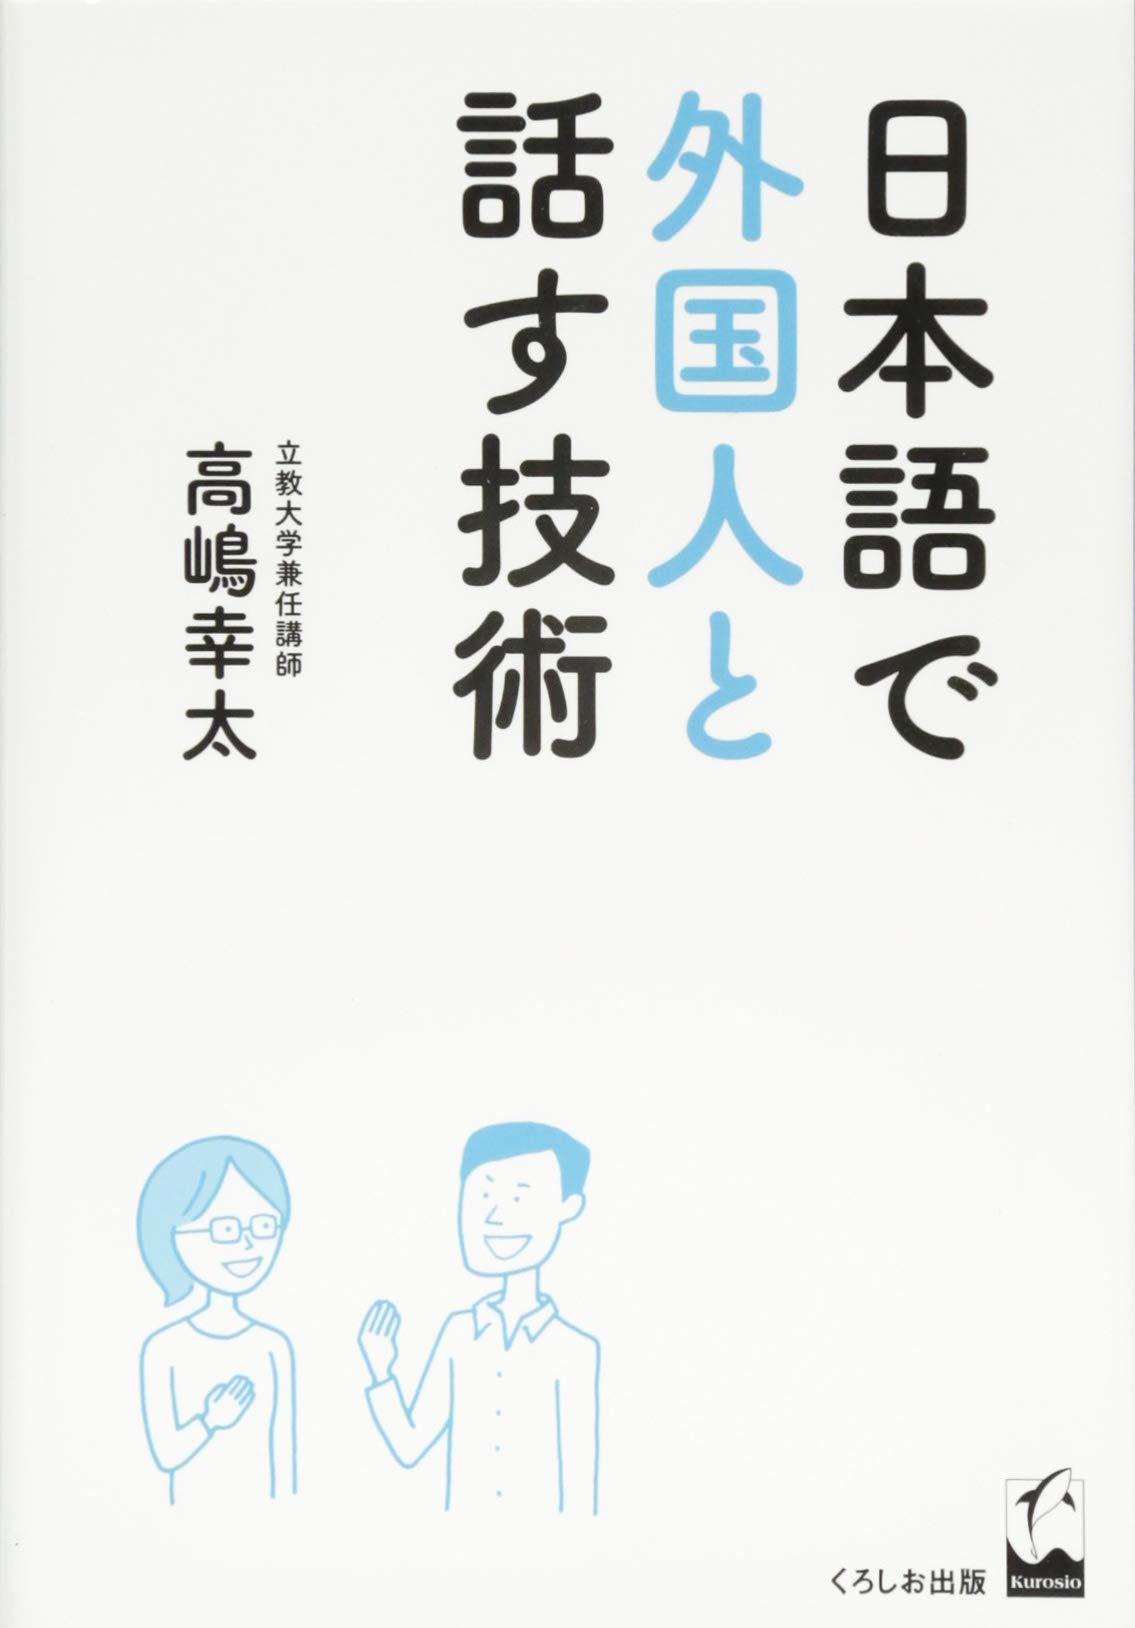 『日本語で外国人と話す技術』